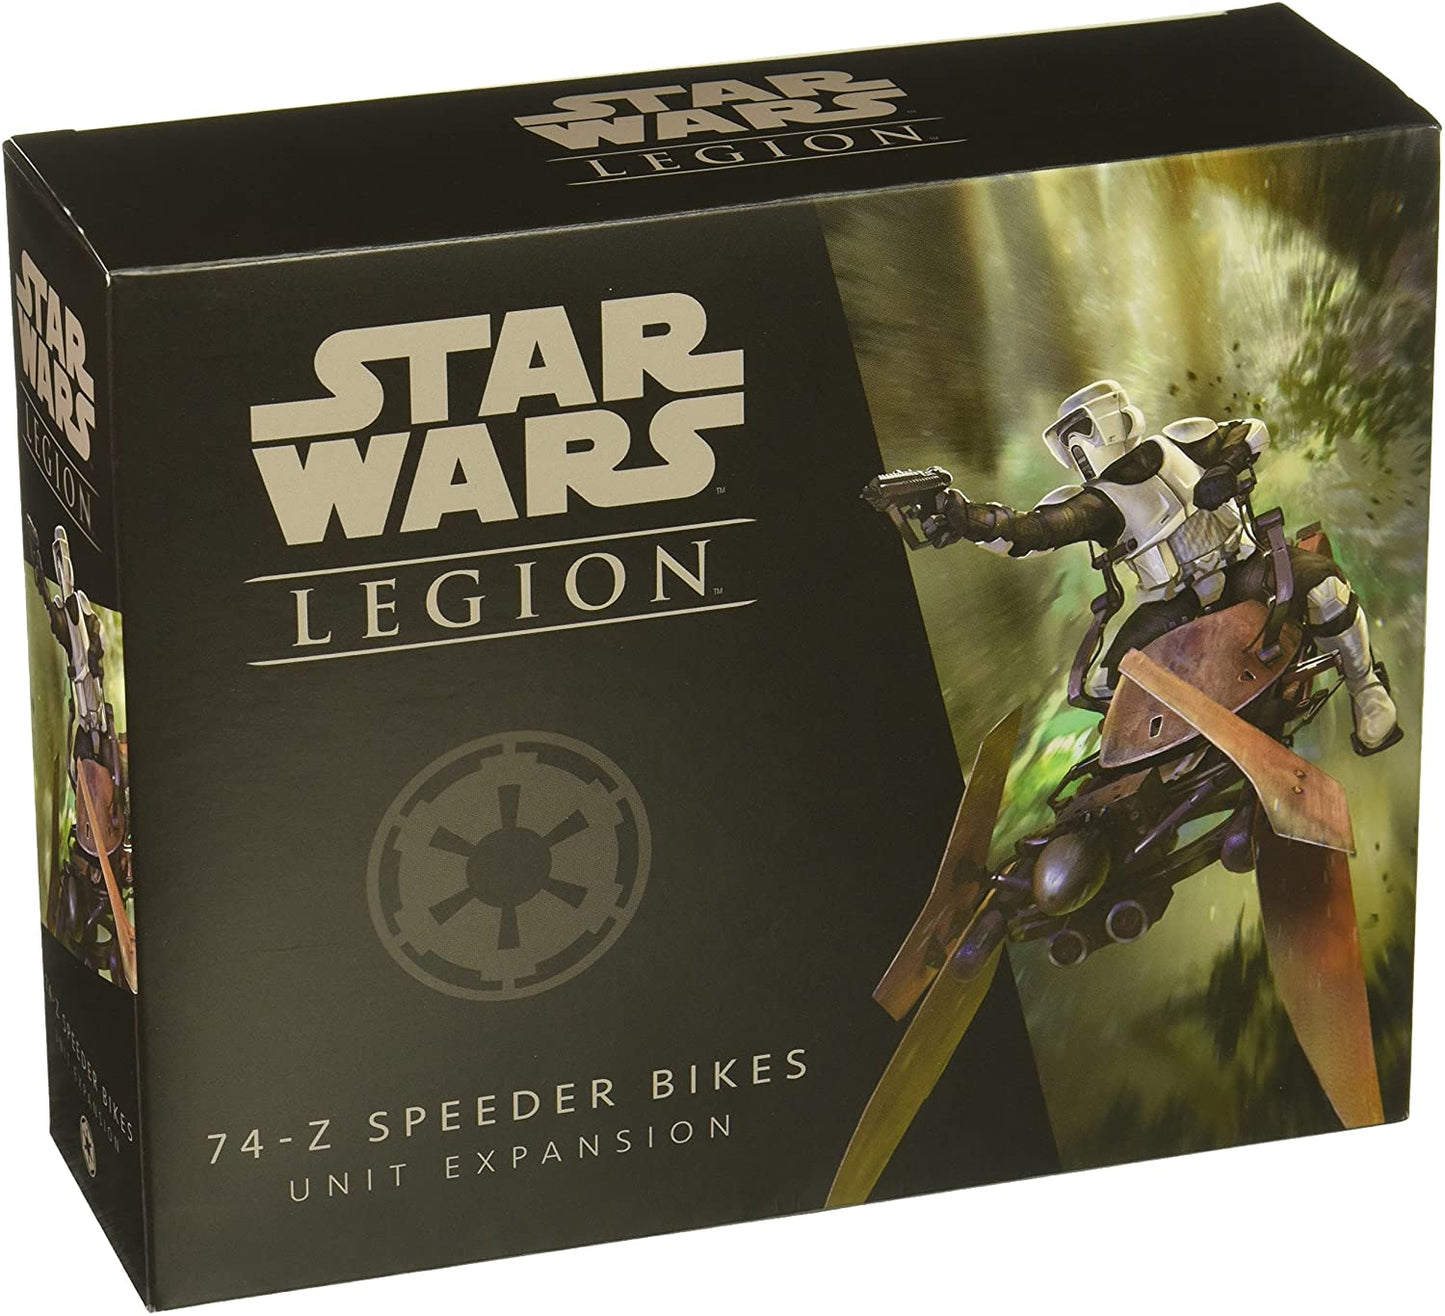 Star Wars: Legion - Speeder Bikes Unit Expansion